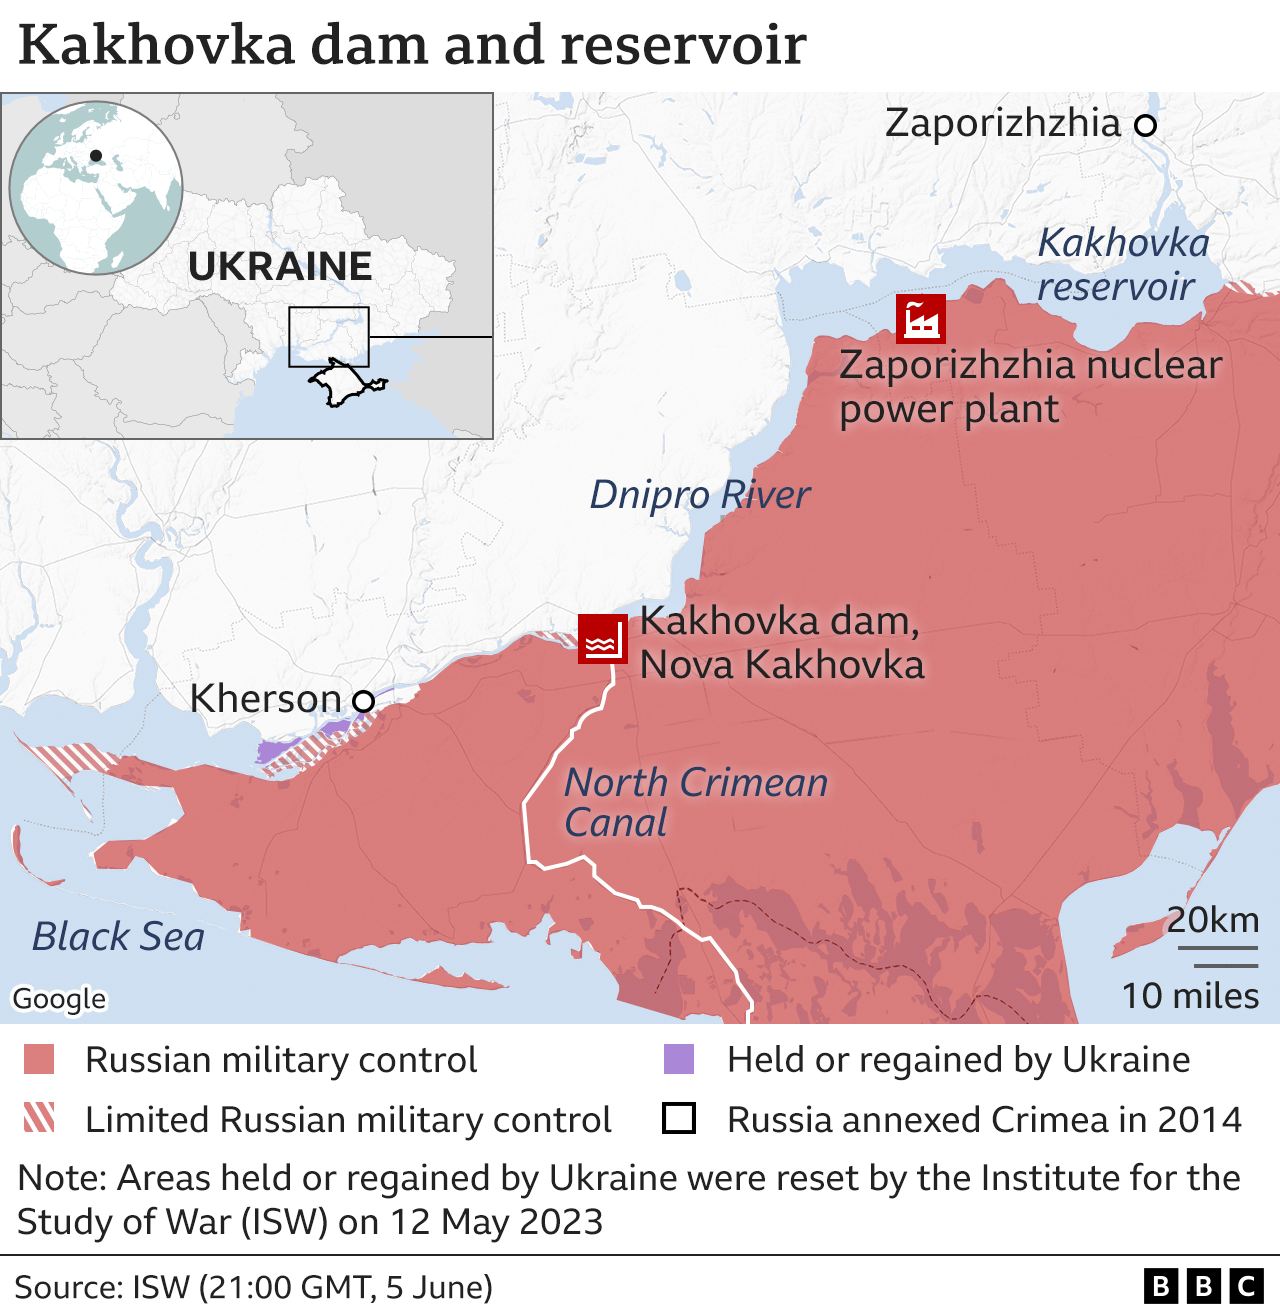 A map shows the Zaporizhzhia power plant and the Kakhova dam in Ukraine